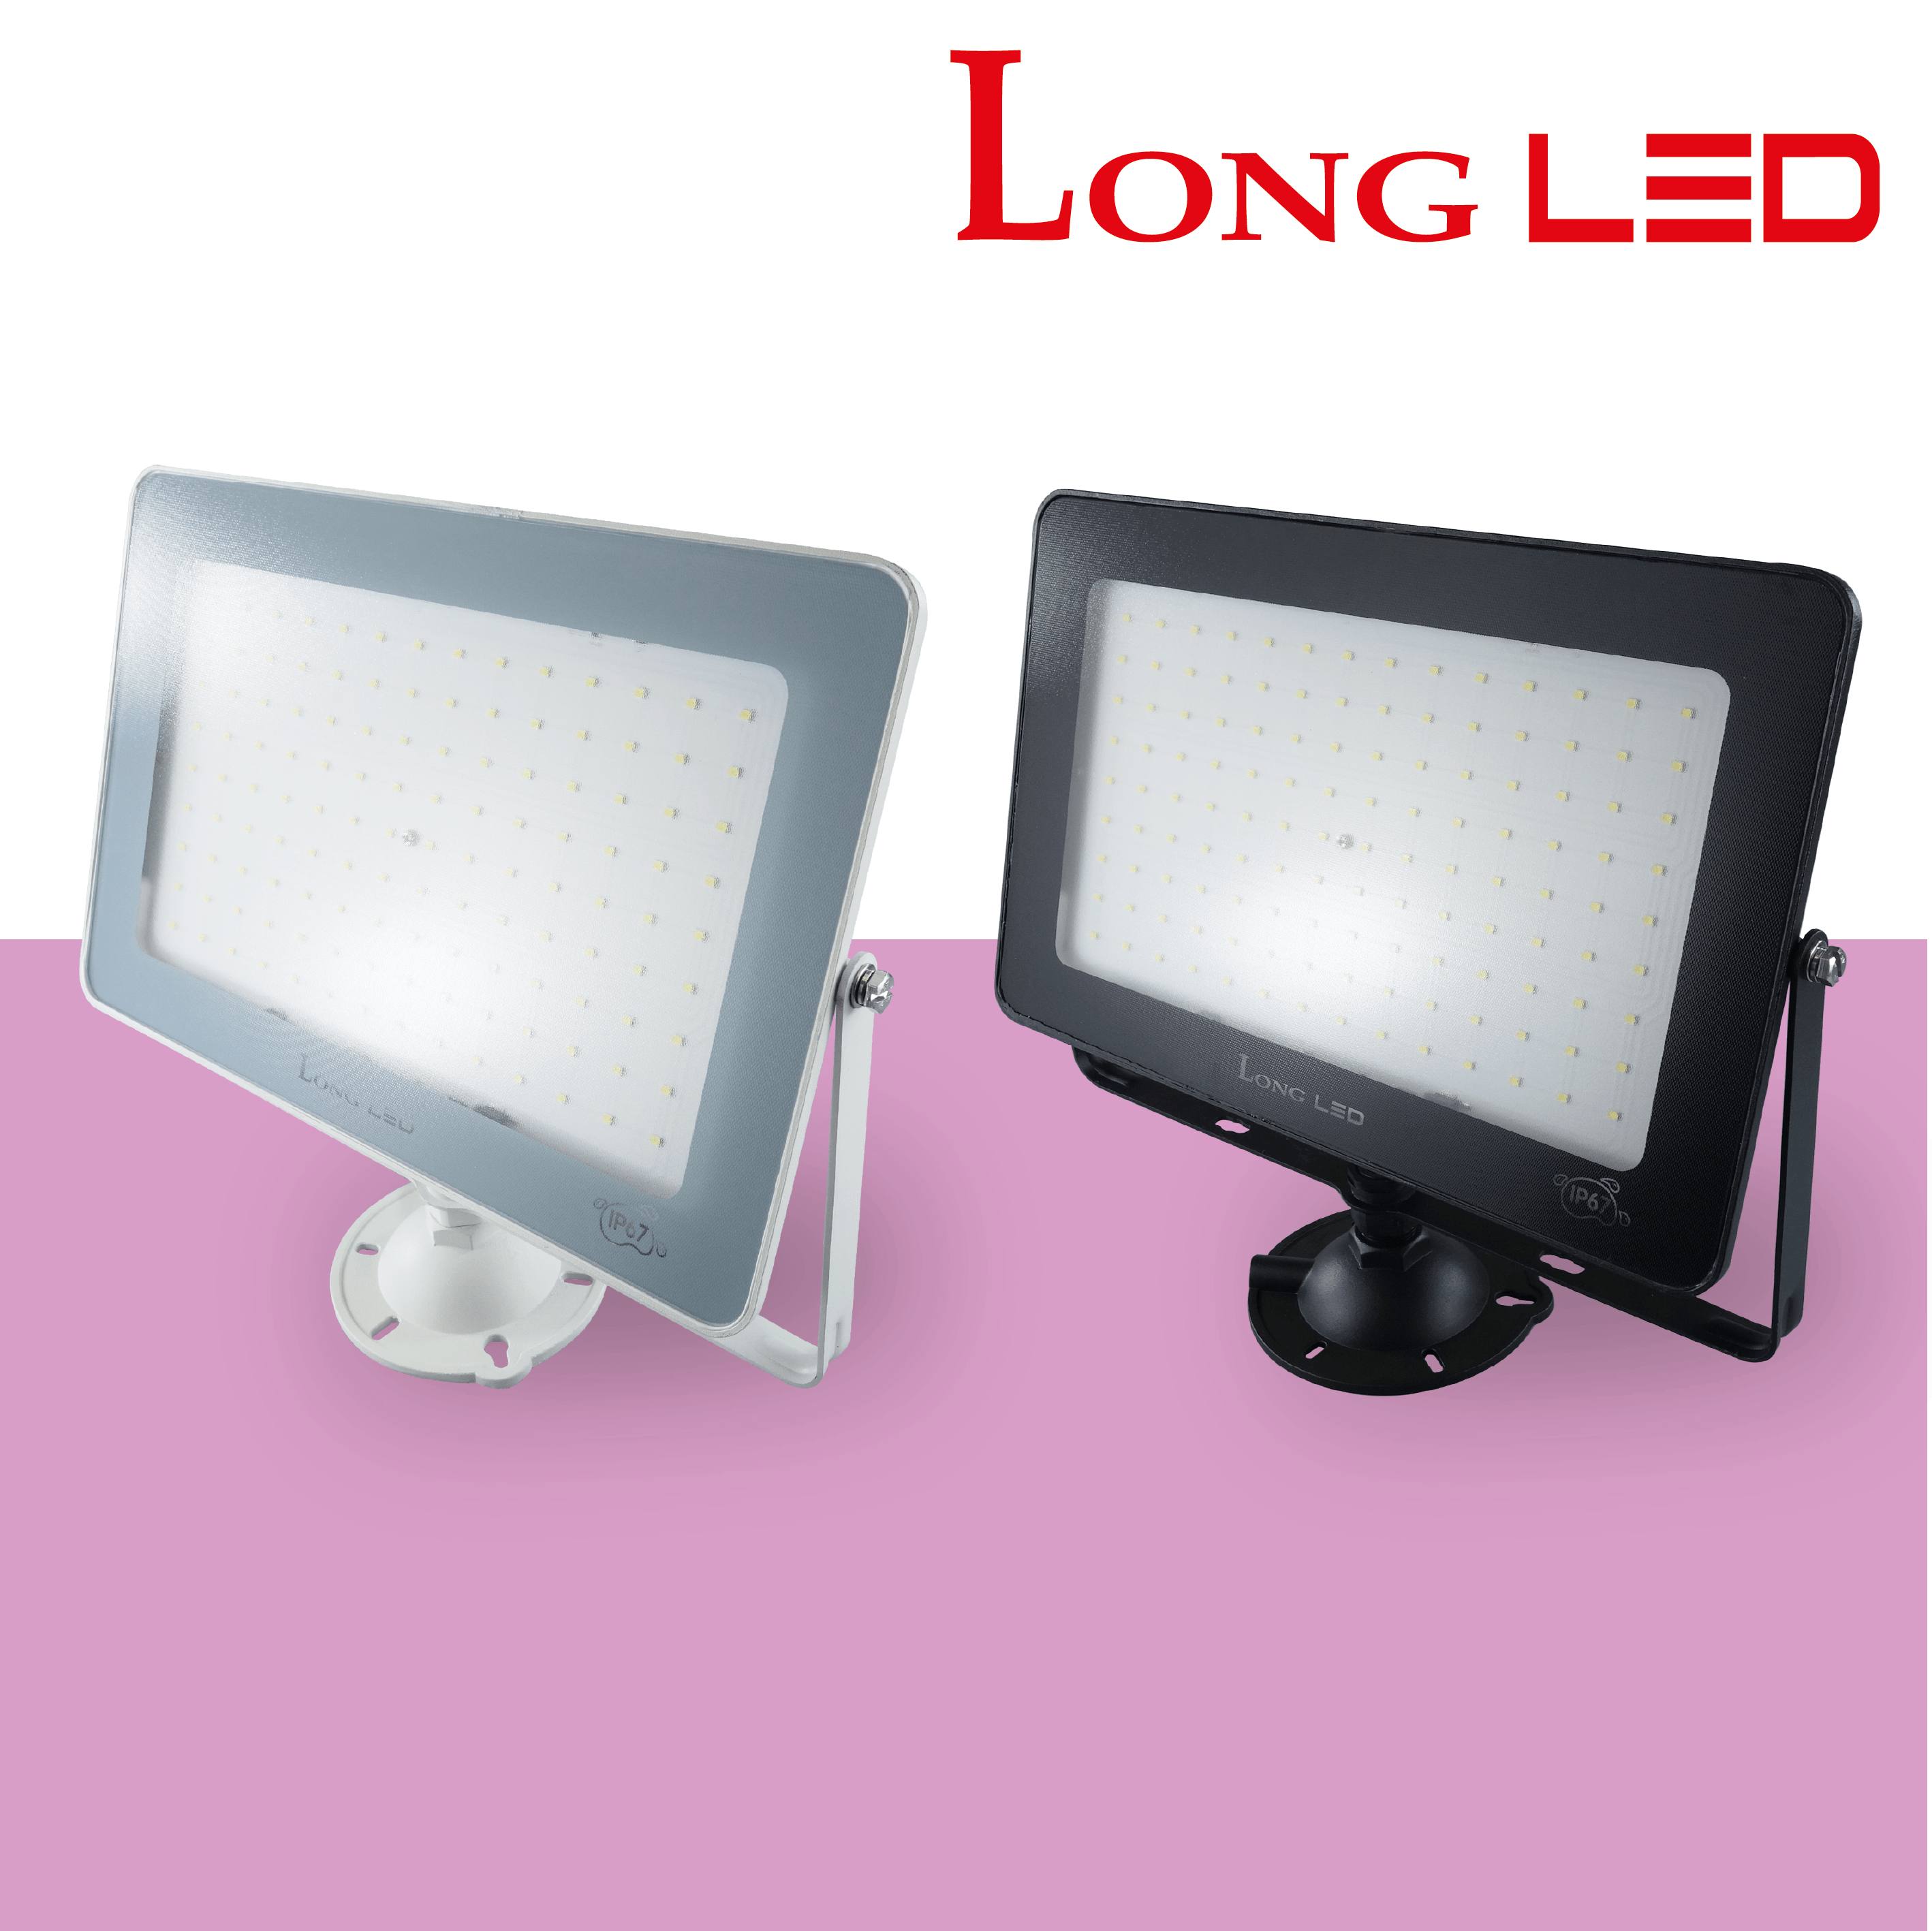 LONG LED 투광등 투광기 실외 간판 야외 조명 고천장등 방수 IP65